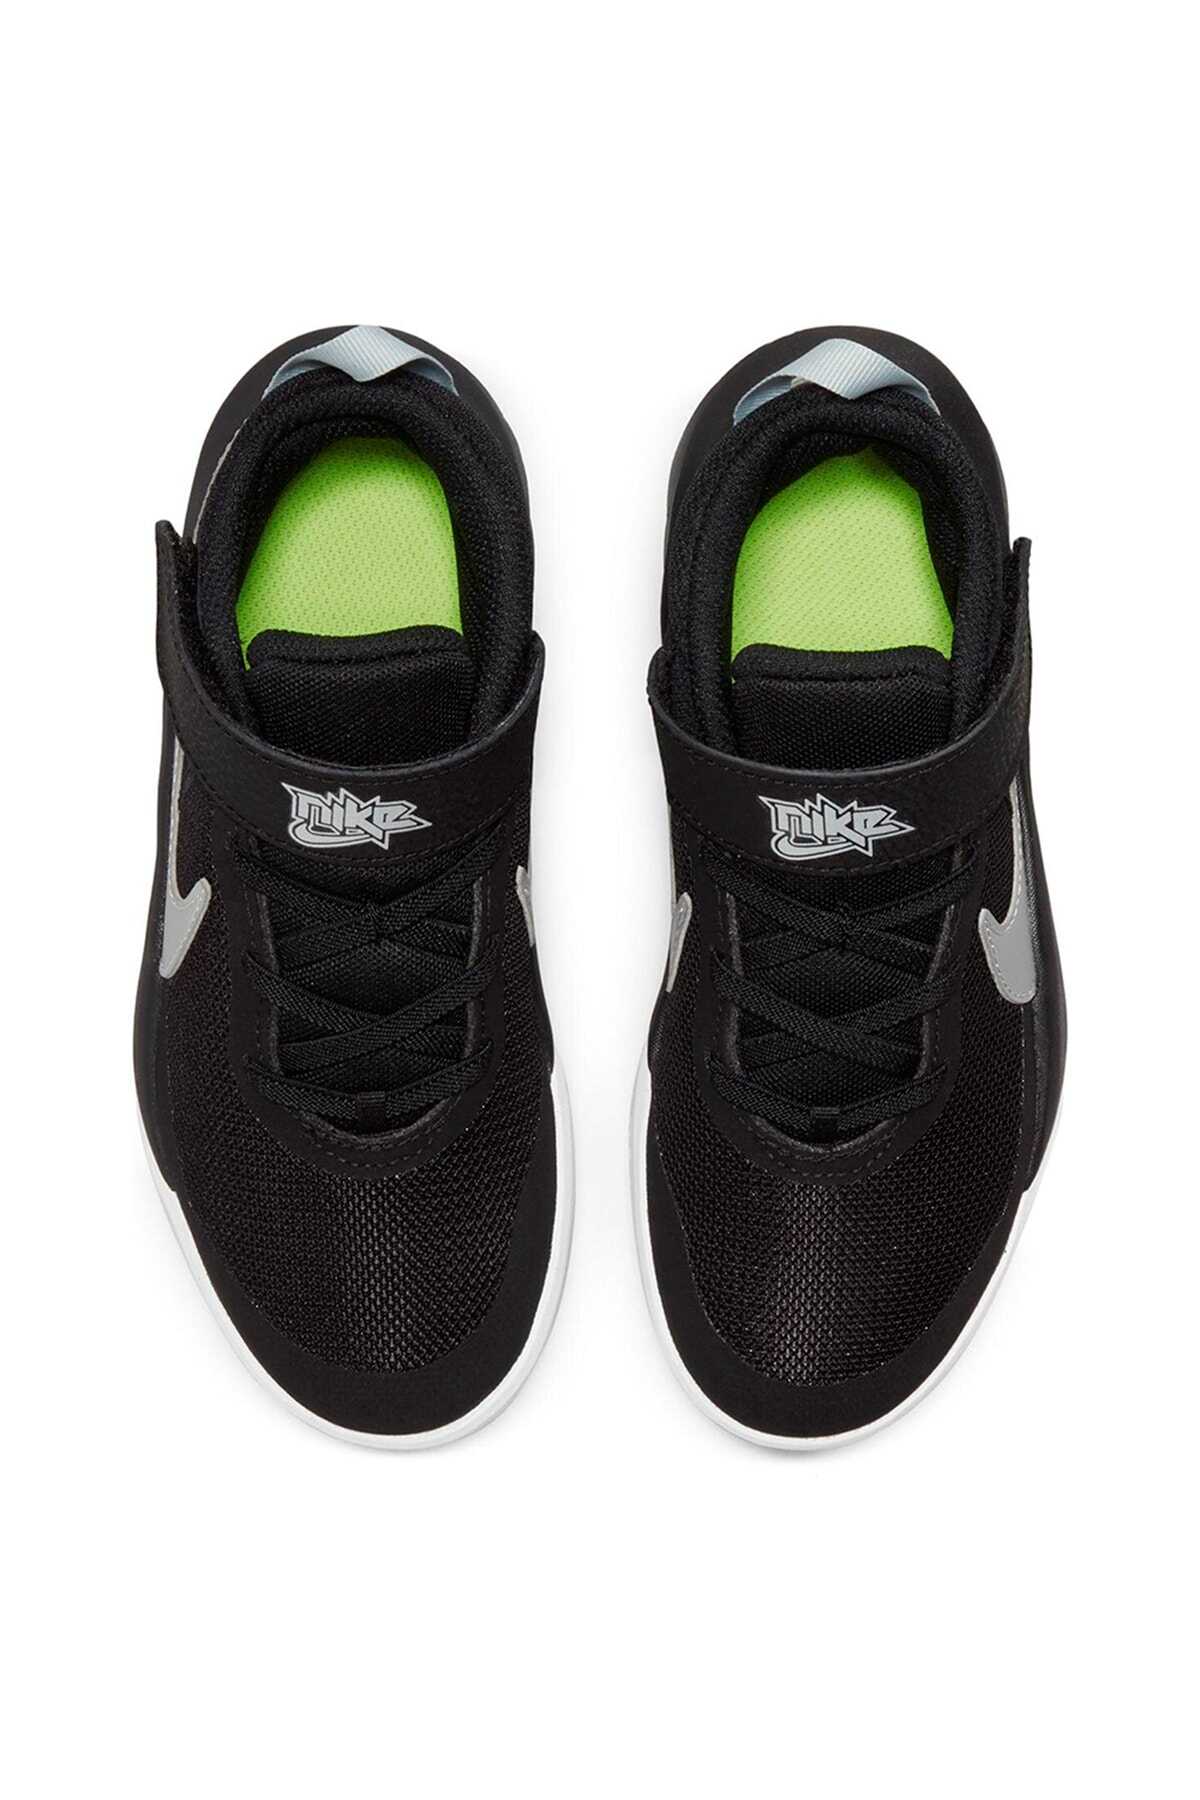 کفش بسکتبال مدل Cw6736-004 پسرانه مشکی برند Nike